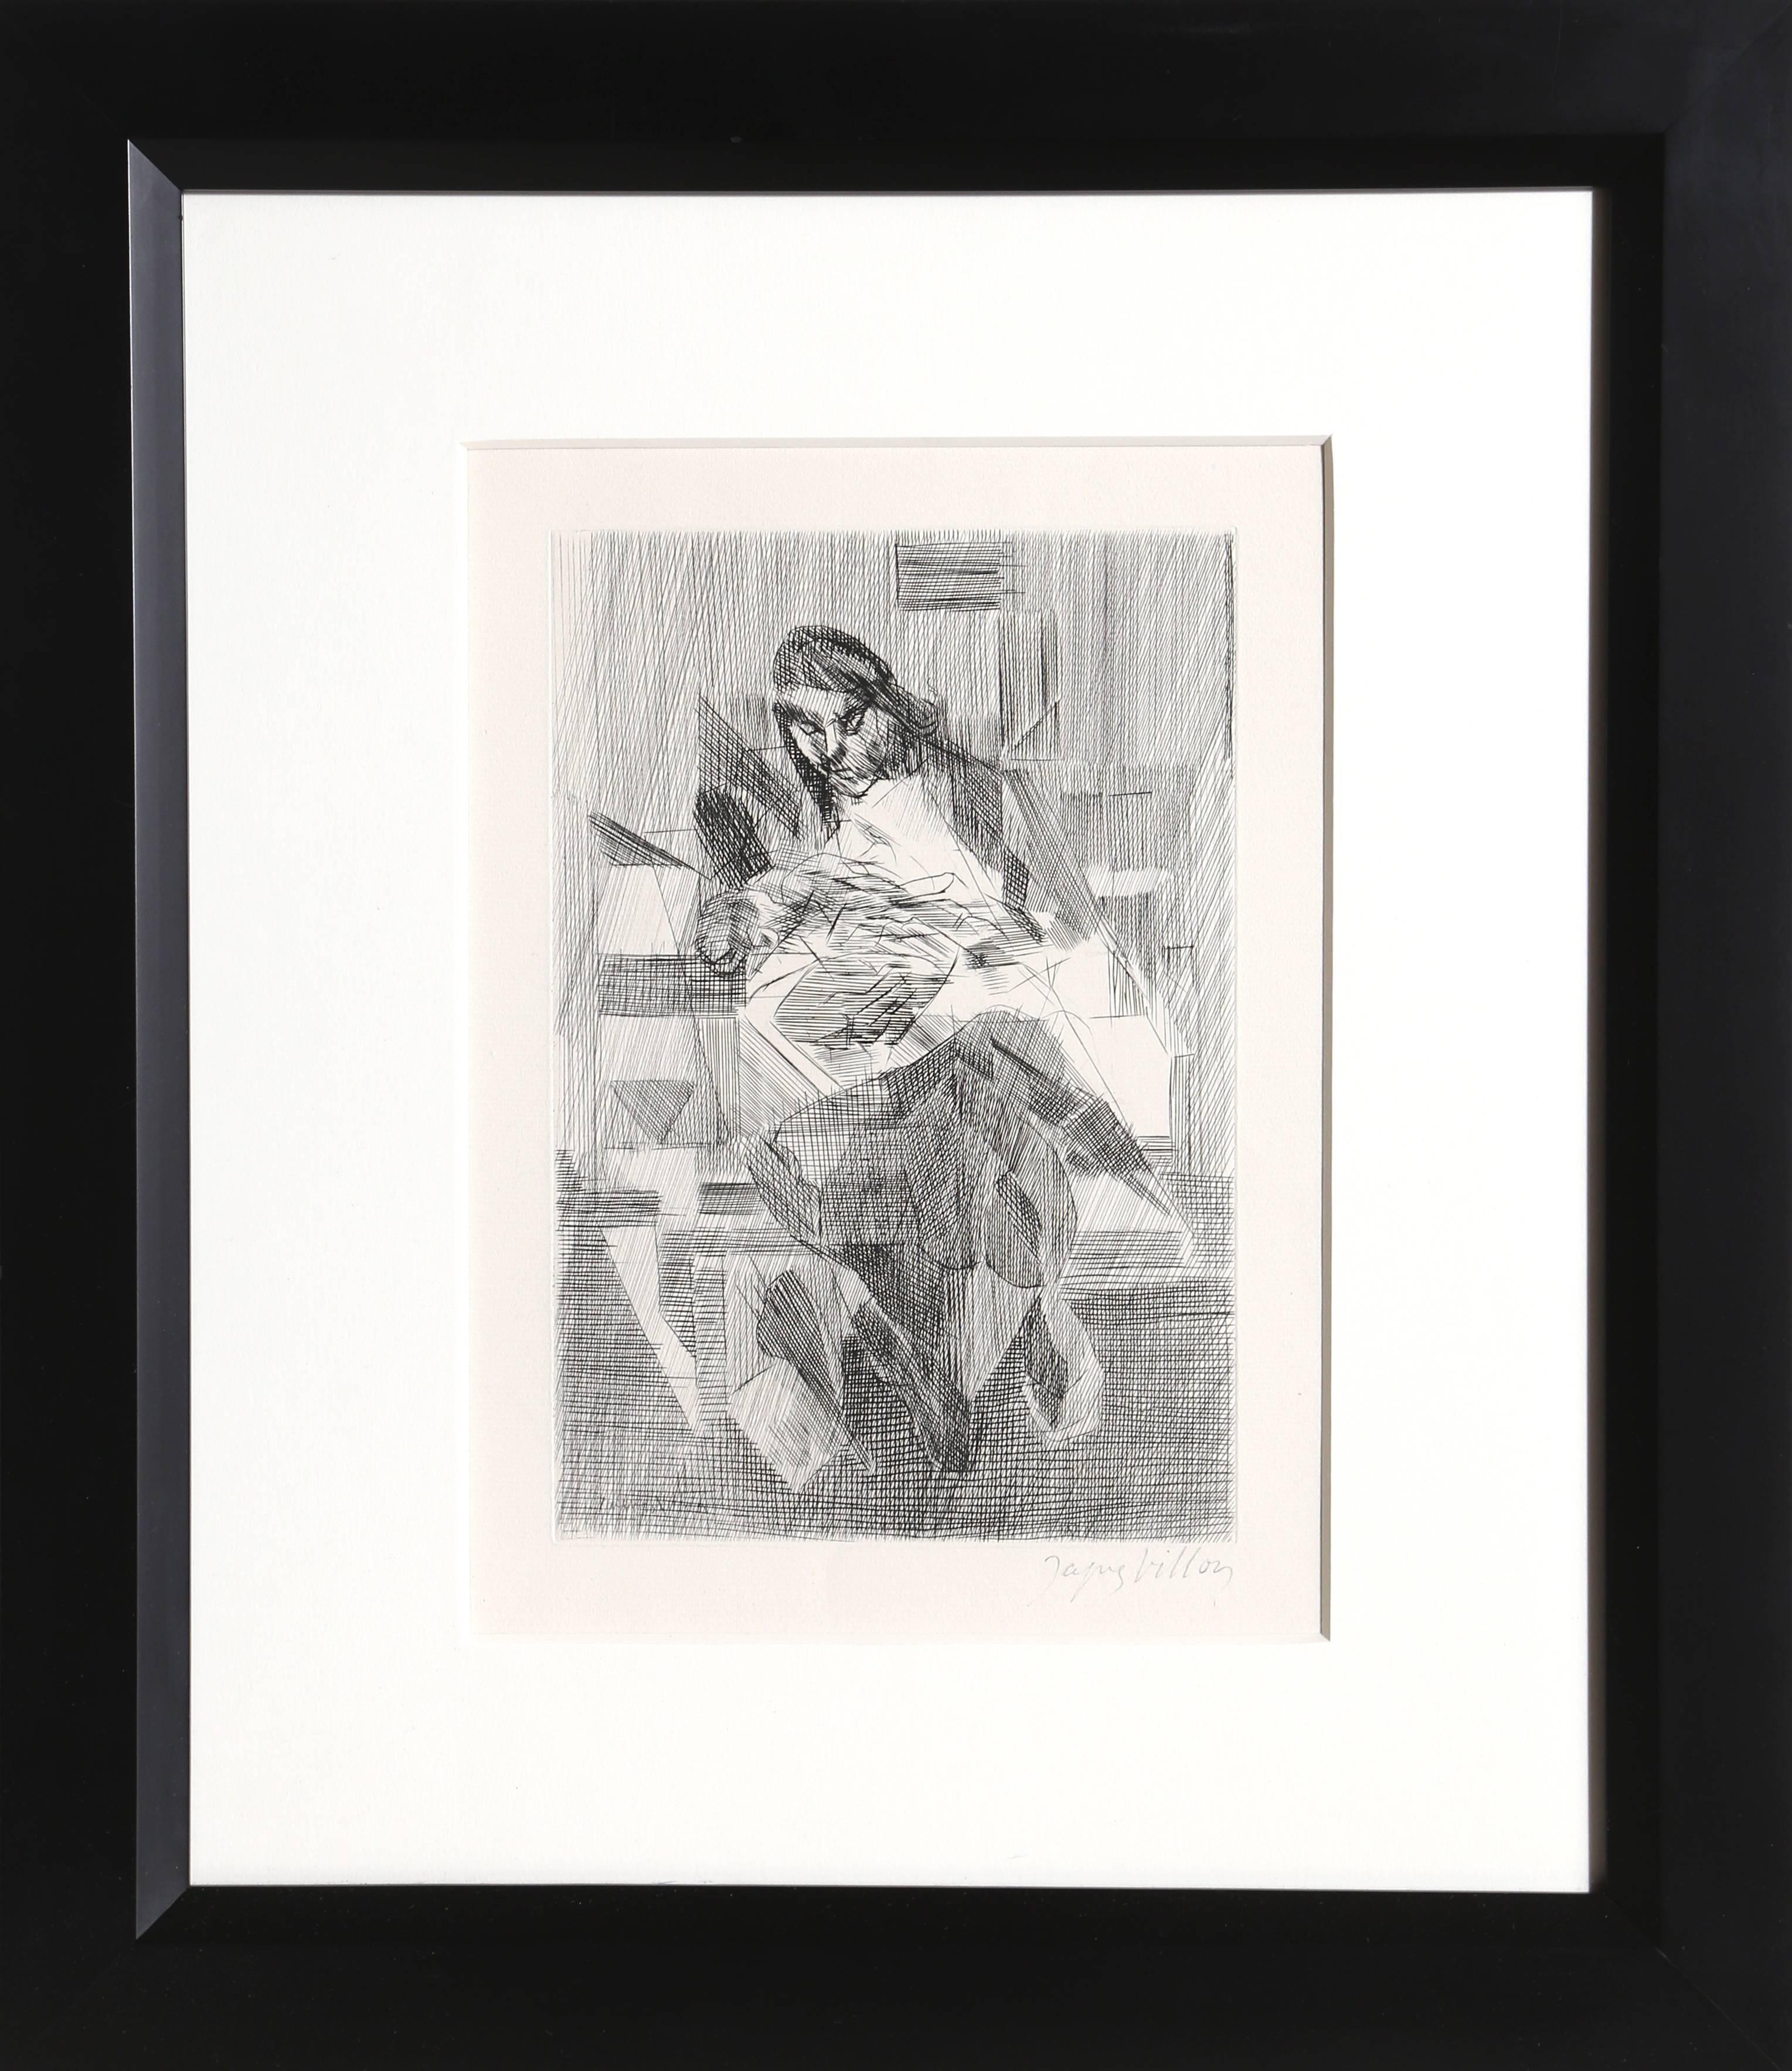 Künstler: Jacques Villon, Franzose (1875 - 1963)
Titel: Maternit
Jahr: 1952
Medium: Radierung, mit Bleistift signiert
Auflage: 75 (nicht nummeriert)
Bildgröße: 11 x 7,5 Zoll
Größe: 16 x 13 Zoll (40,64 x 33,02 cm)
Rahmen: 22,5 x 19 Zoll